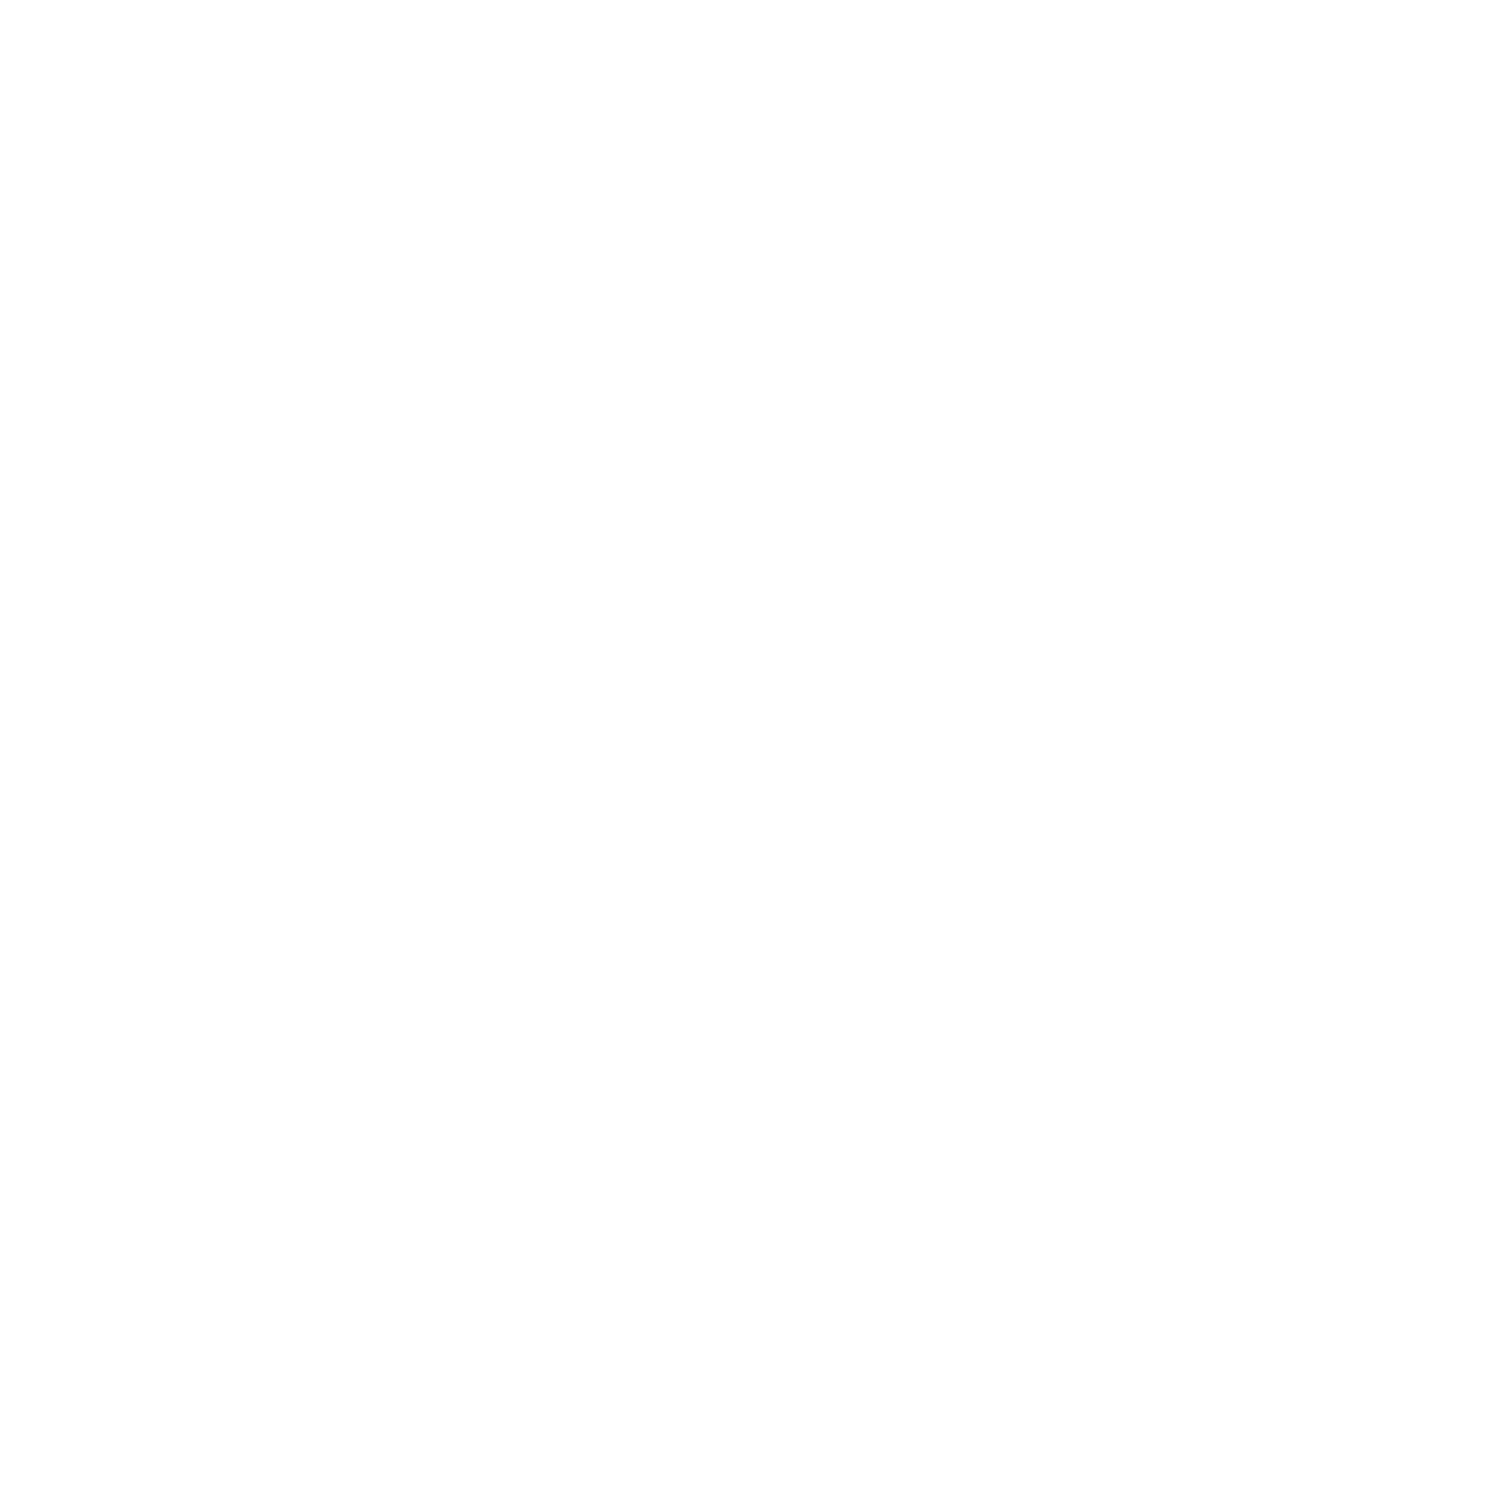 narcog logo kylie made 05